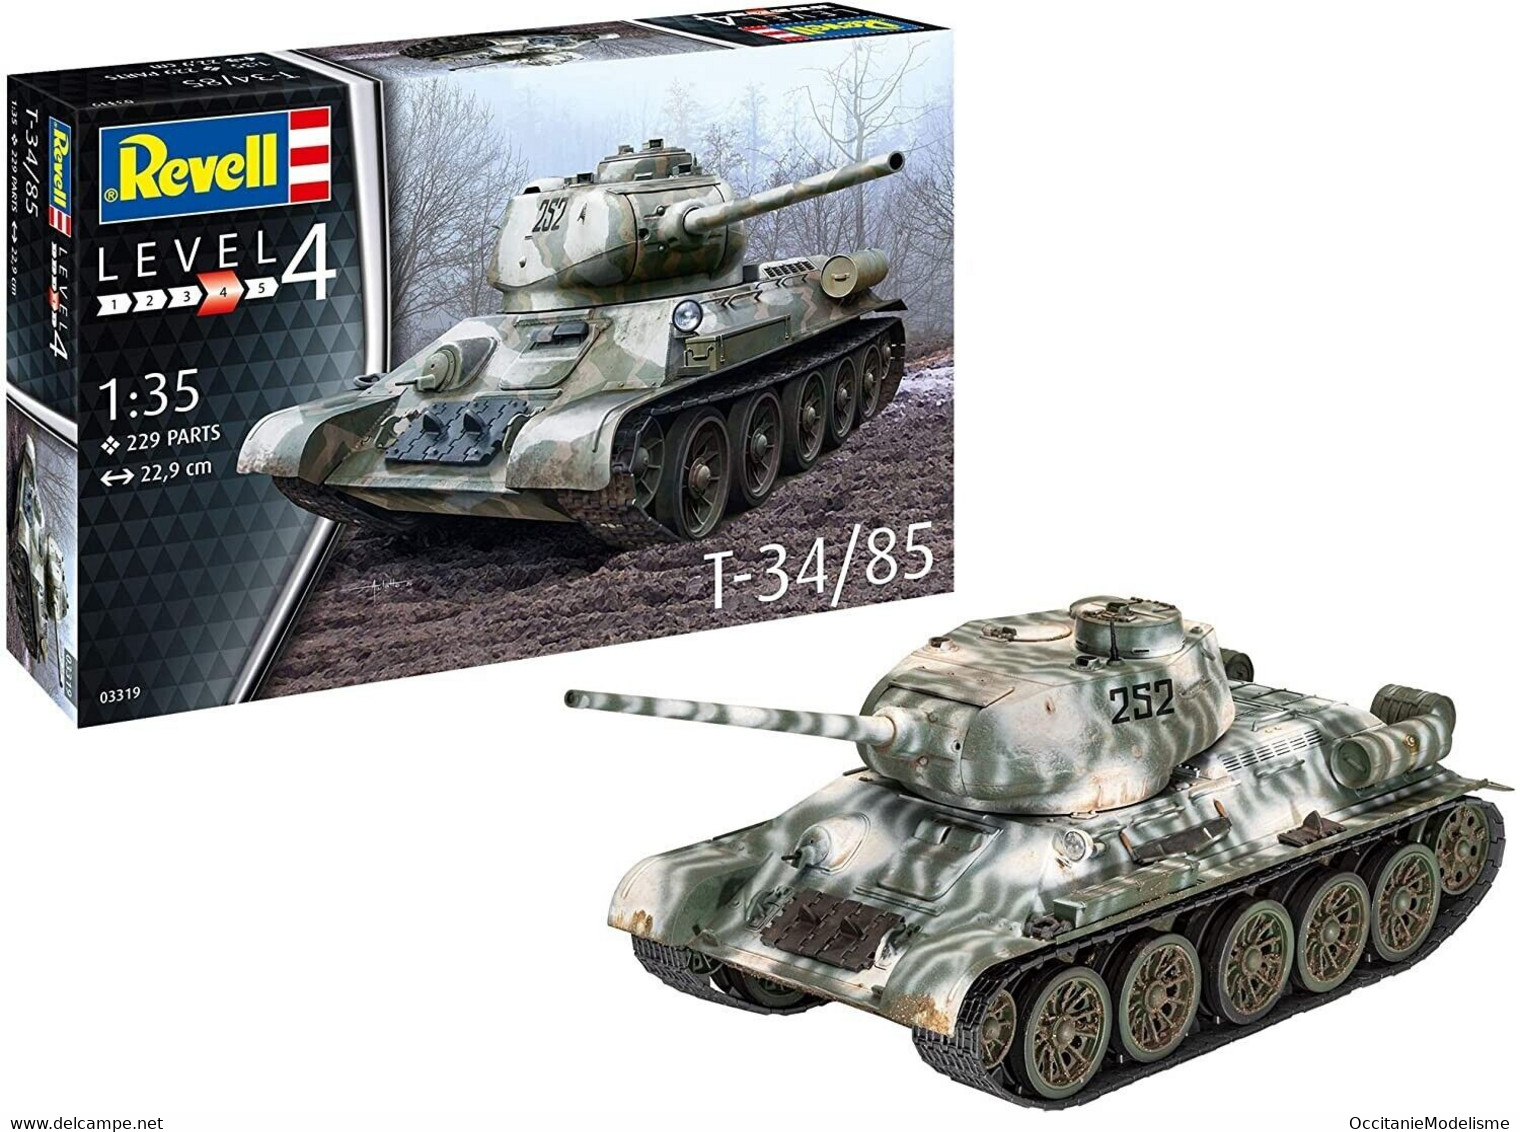 Revell - CHAR Soviétique T-34/85 T-34 85mm Maquette Militaire Kit Plastique Réf. 03319 Neuf NBO 1/35 - Véhicules Militaires